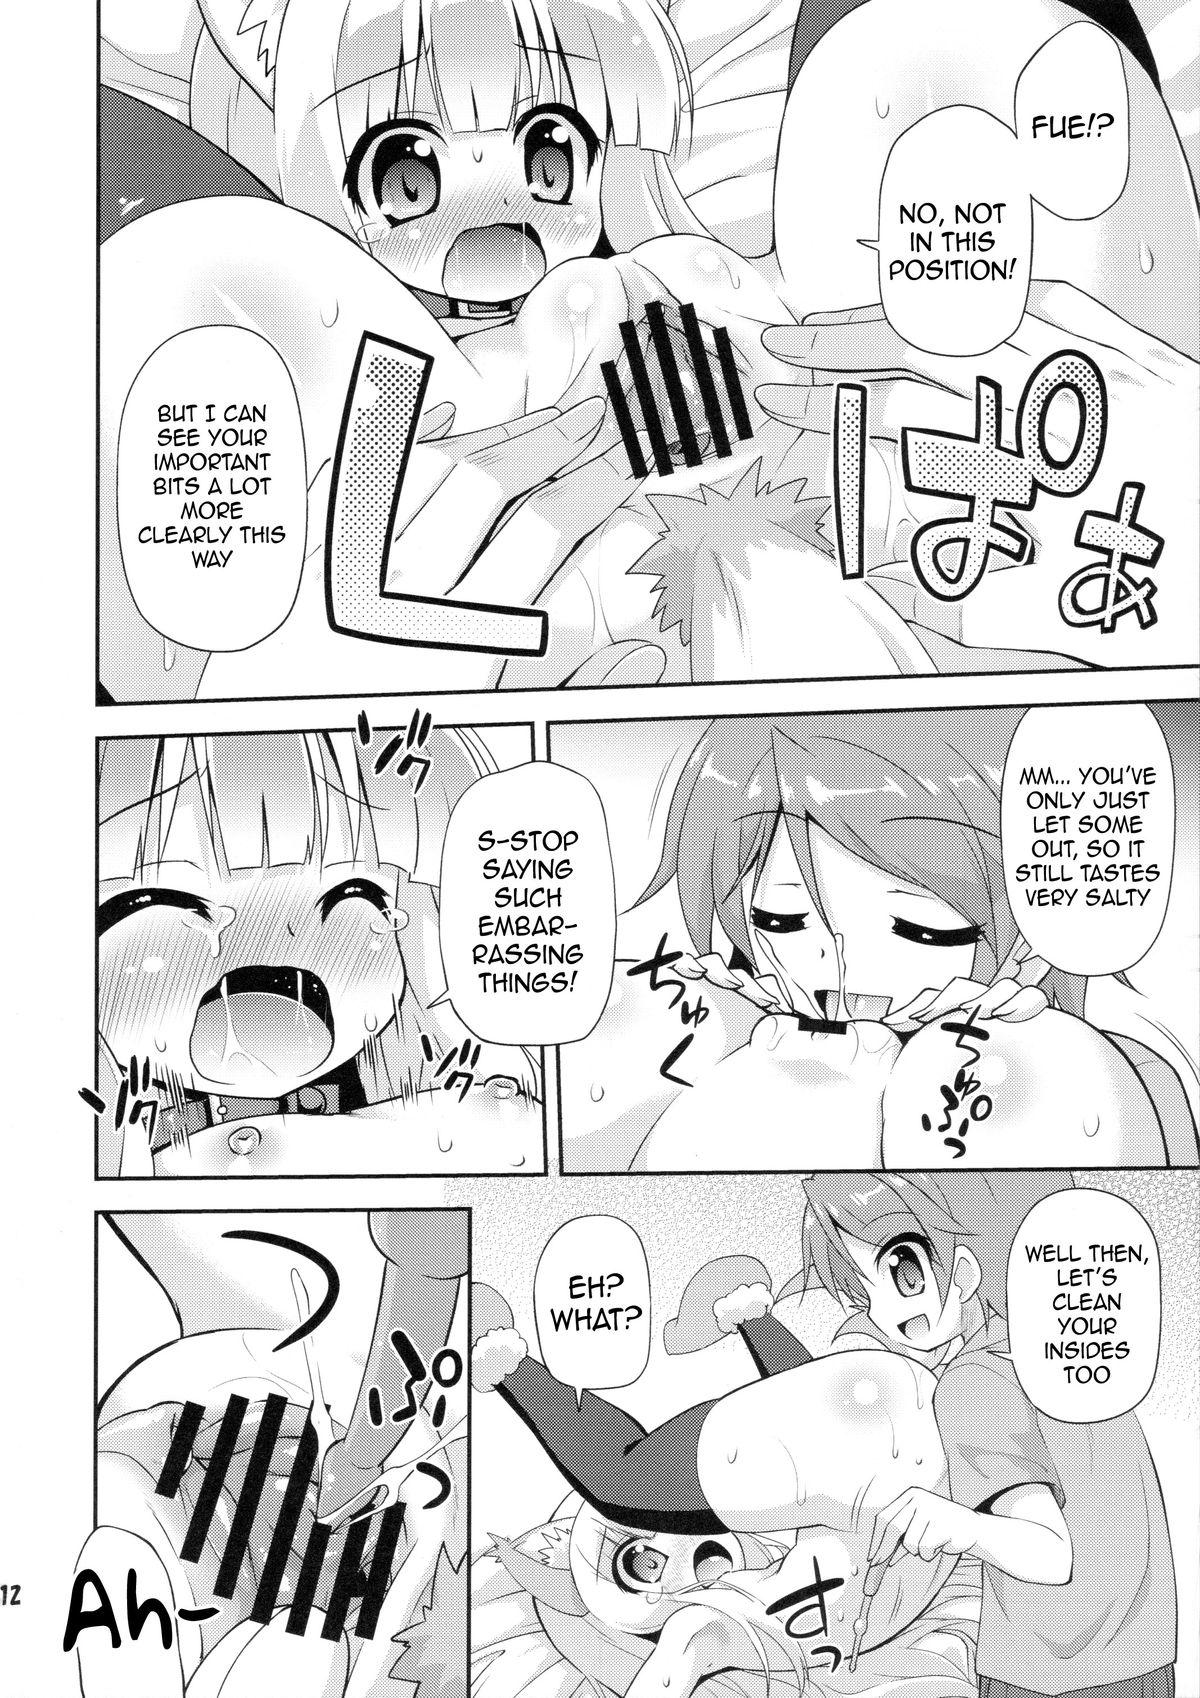 Hot Chicks Fucking HENTAI wa Home Kotoba da! - "HENTAI" is a eulogy! - Hentai ouji to warawanai neko Mother fuck - Page 11